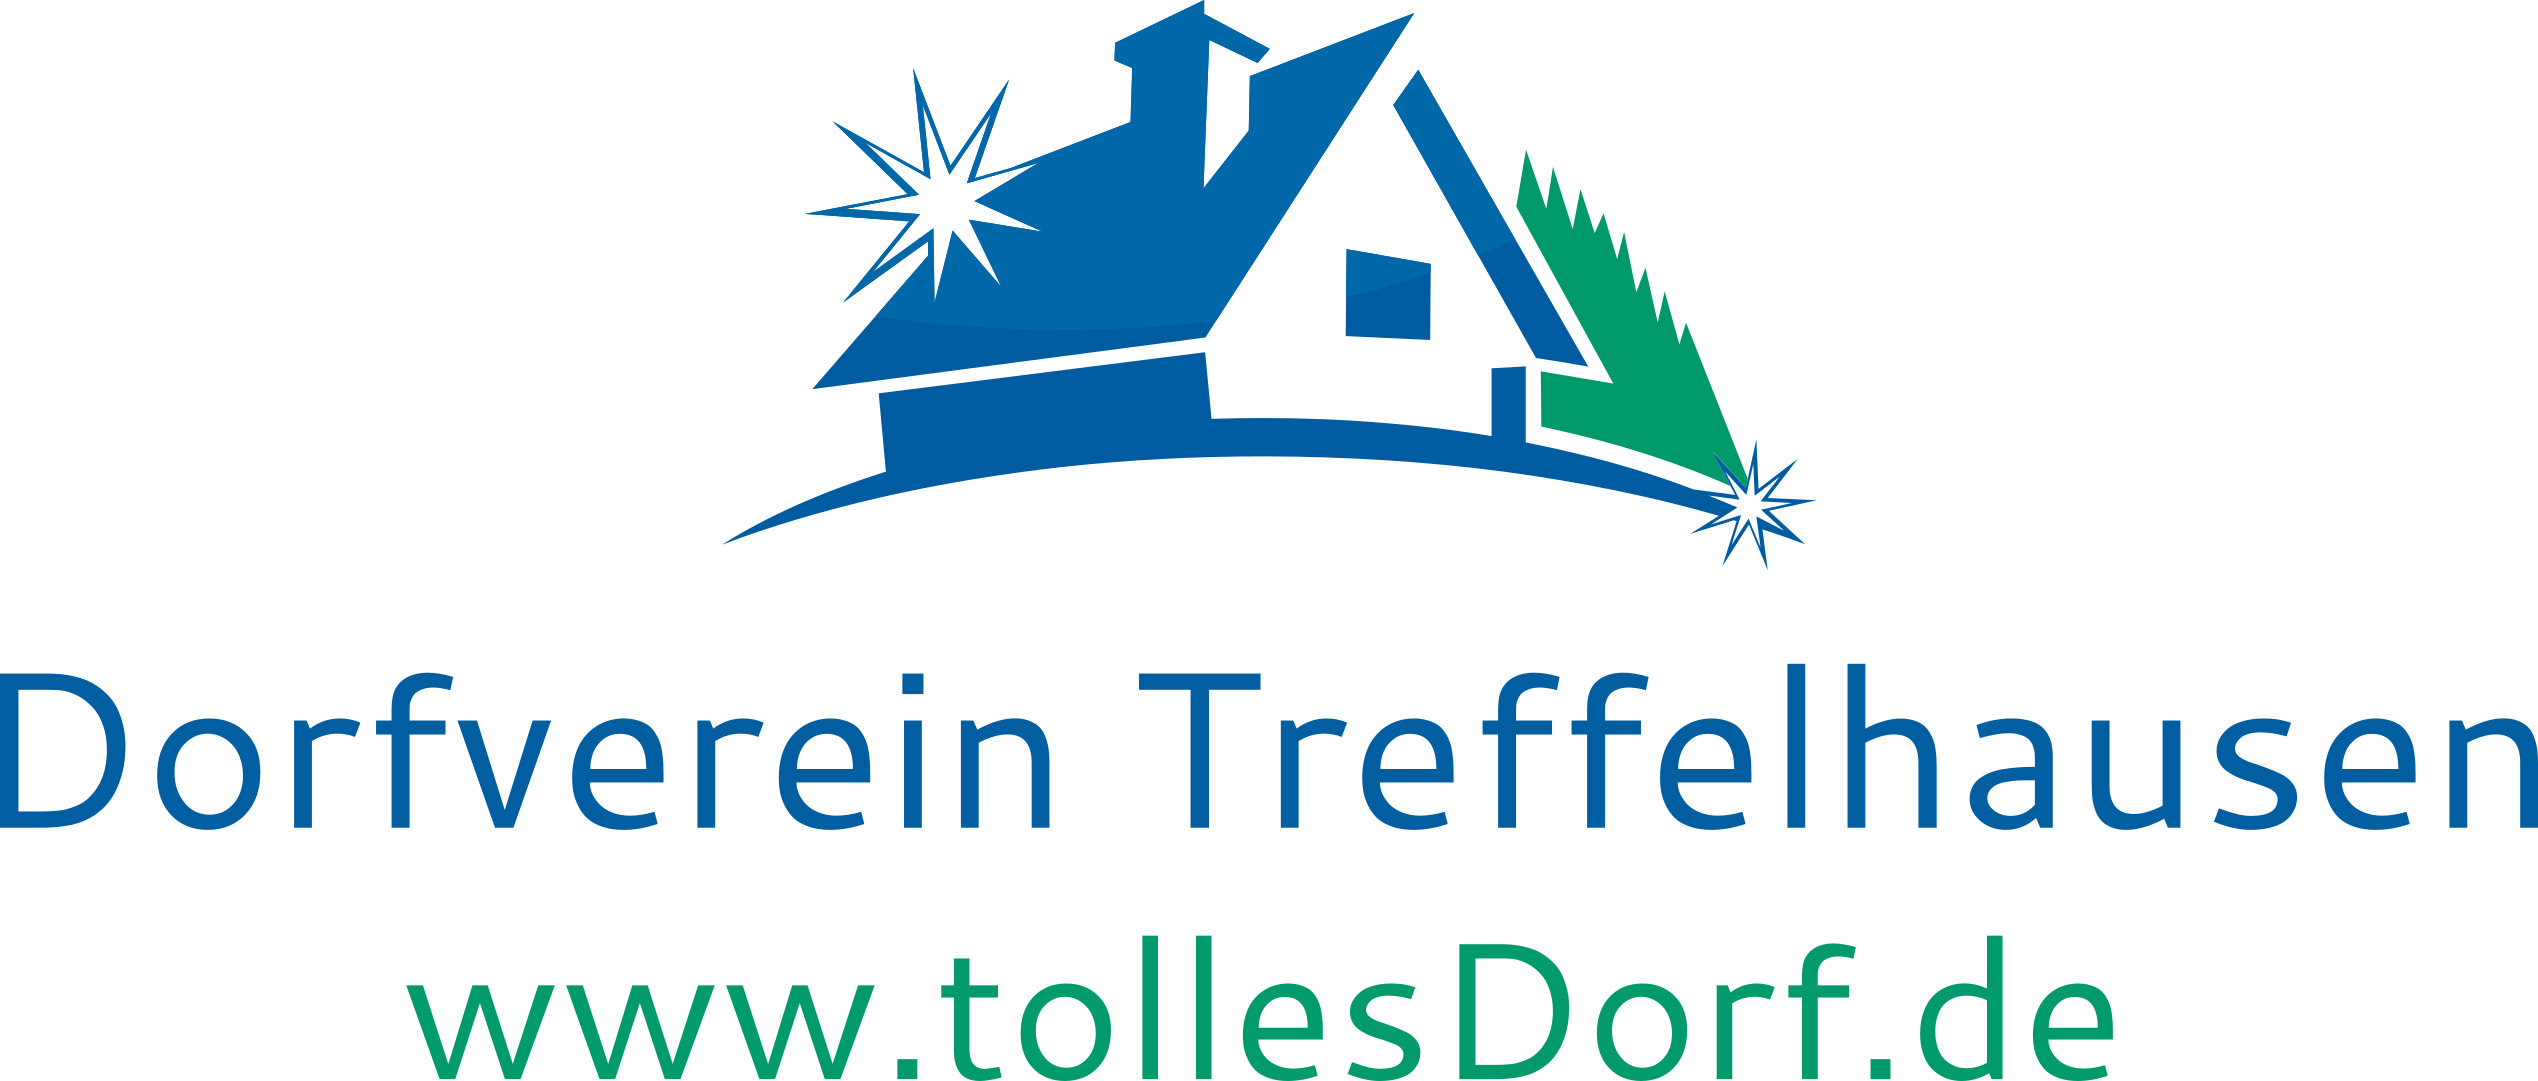 Dorfverein Treffelhausen